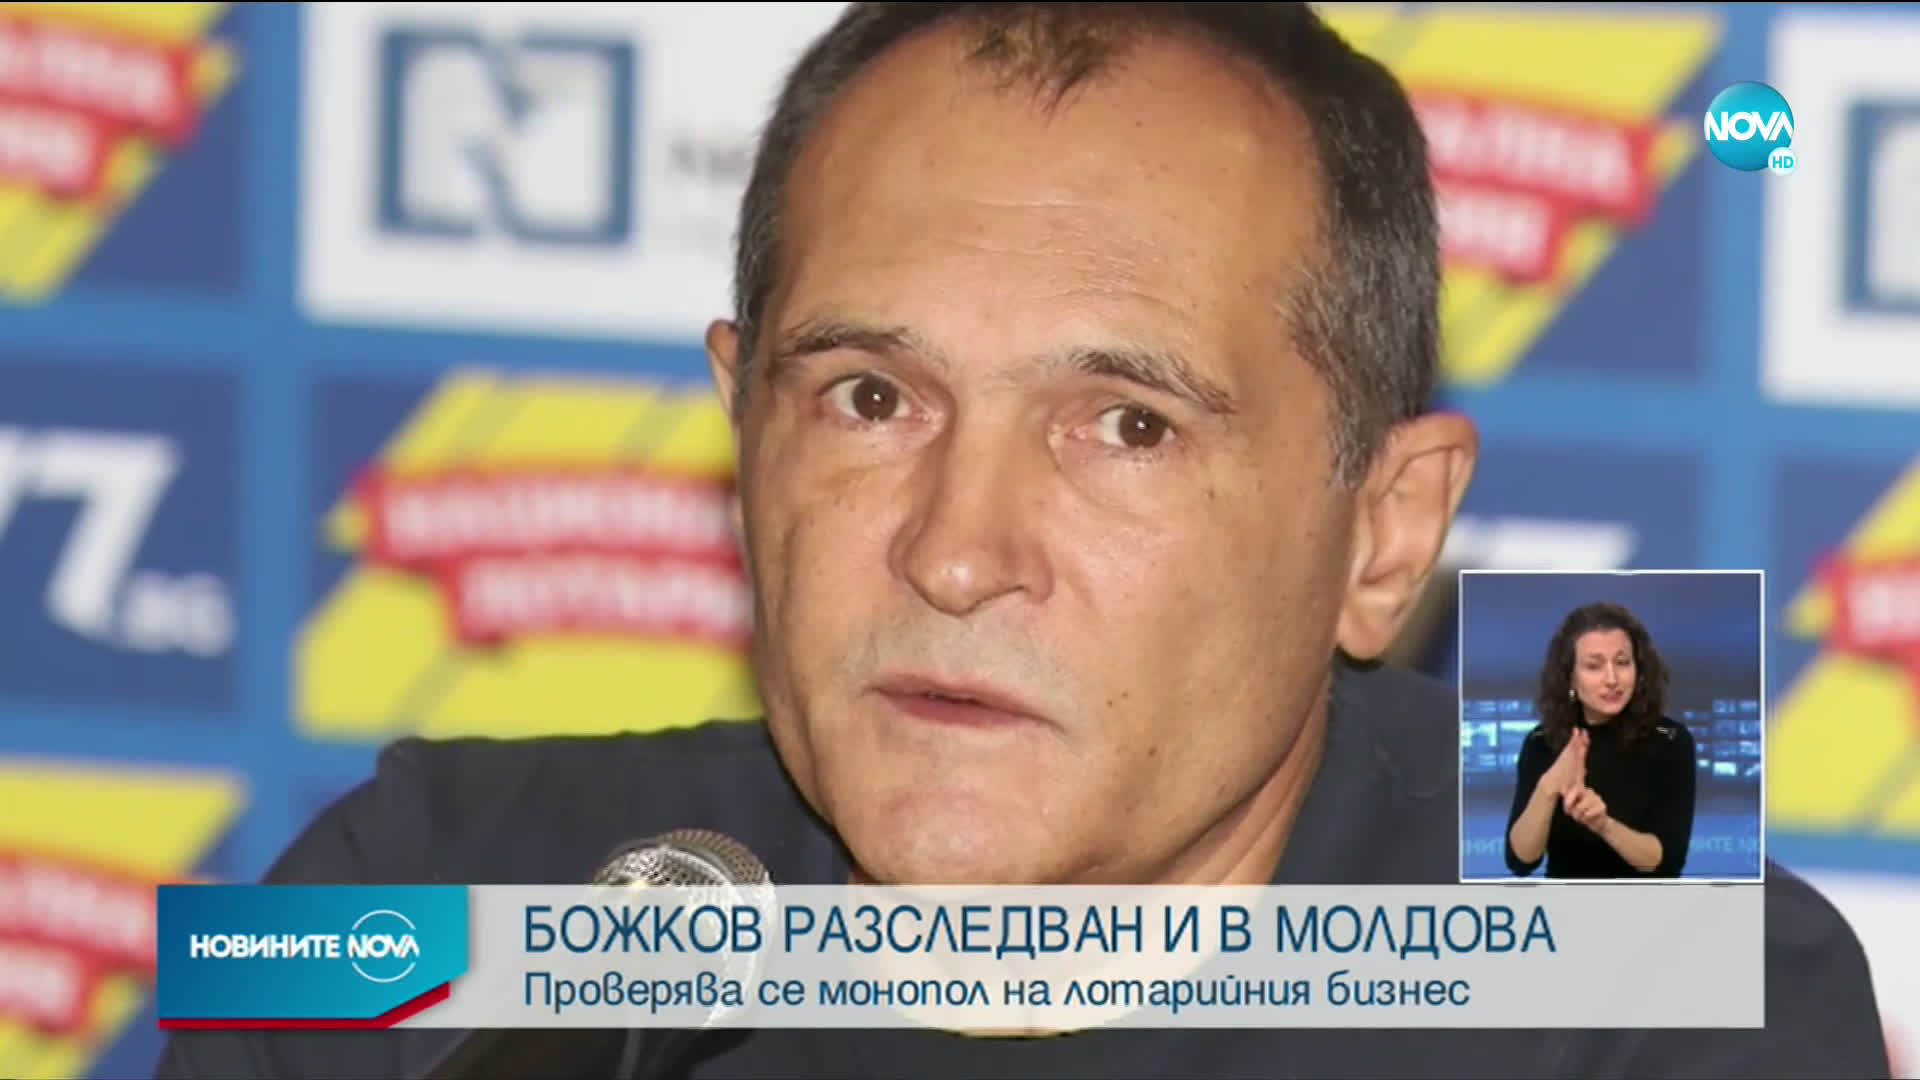 Прокуратурата в Молдова разследва хазартен монопол на фирми на Божков